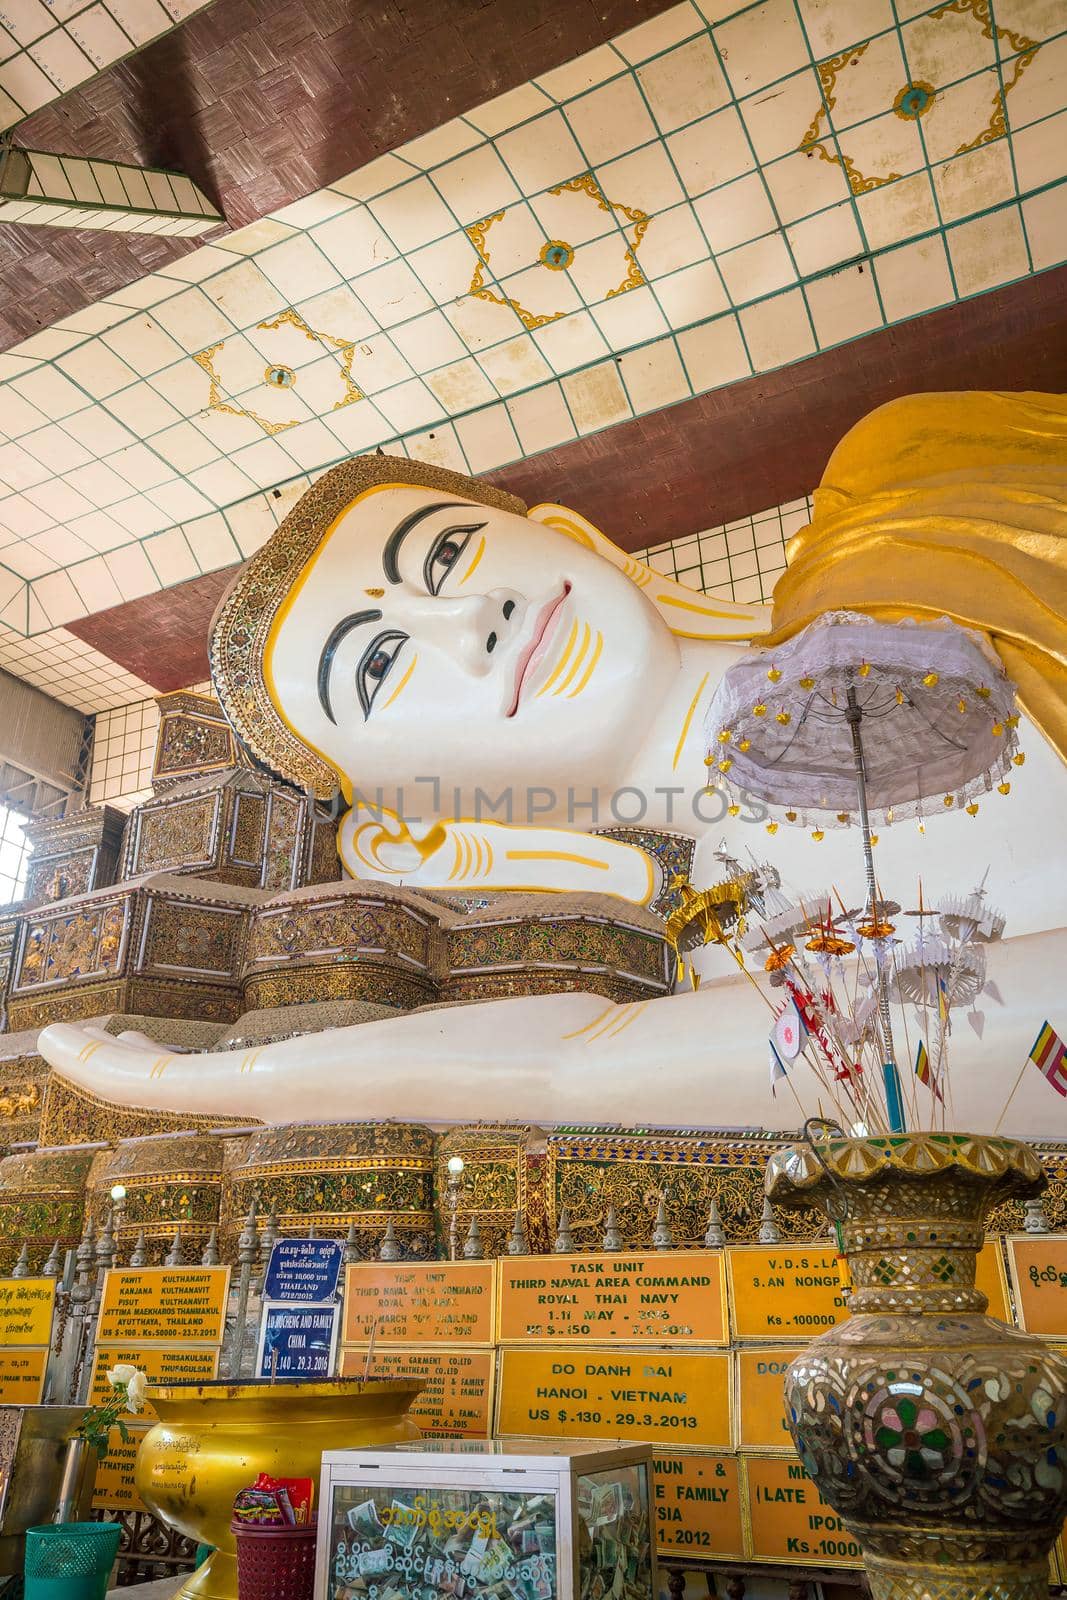 Shwethalyaung Reclining Buddha  in Bago, Myanmar by f11photo